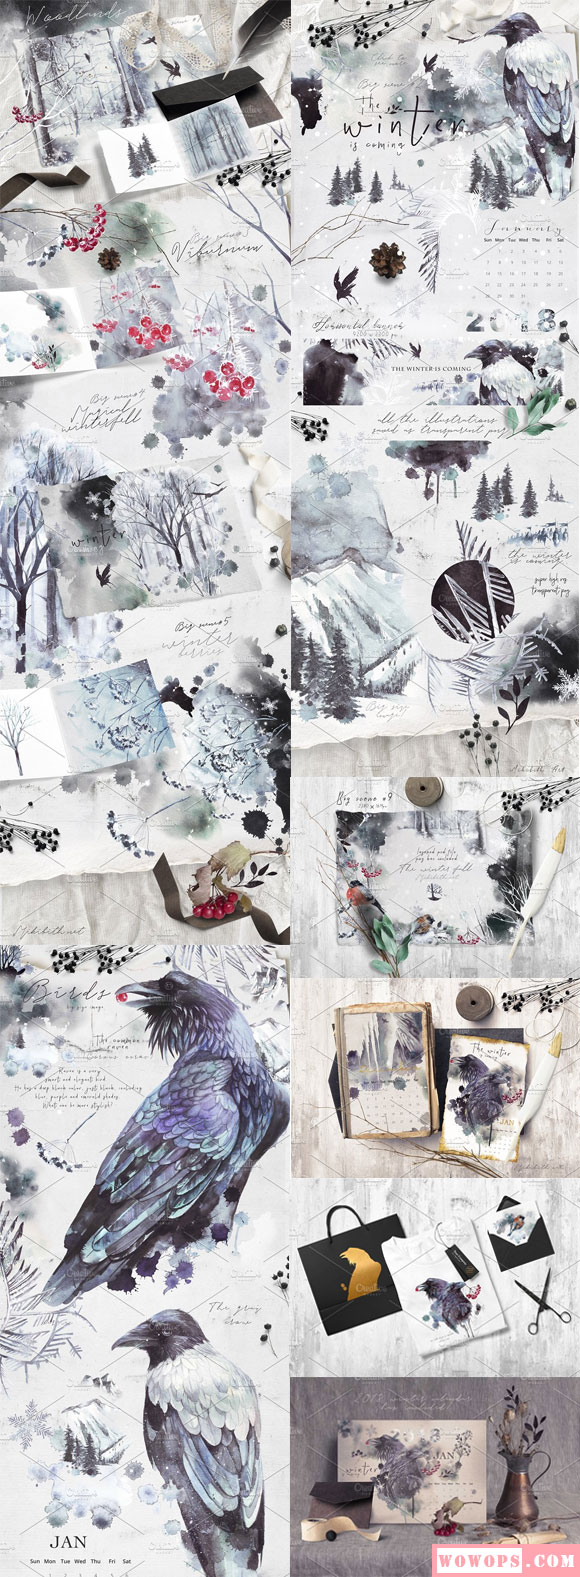 水彩水墨画冬季森林乌鸦鸟插画日历模板5